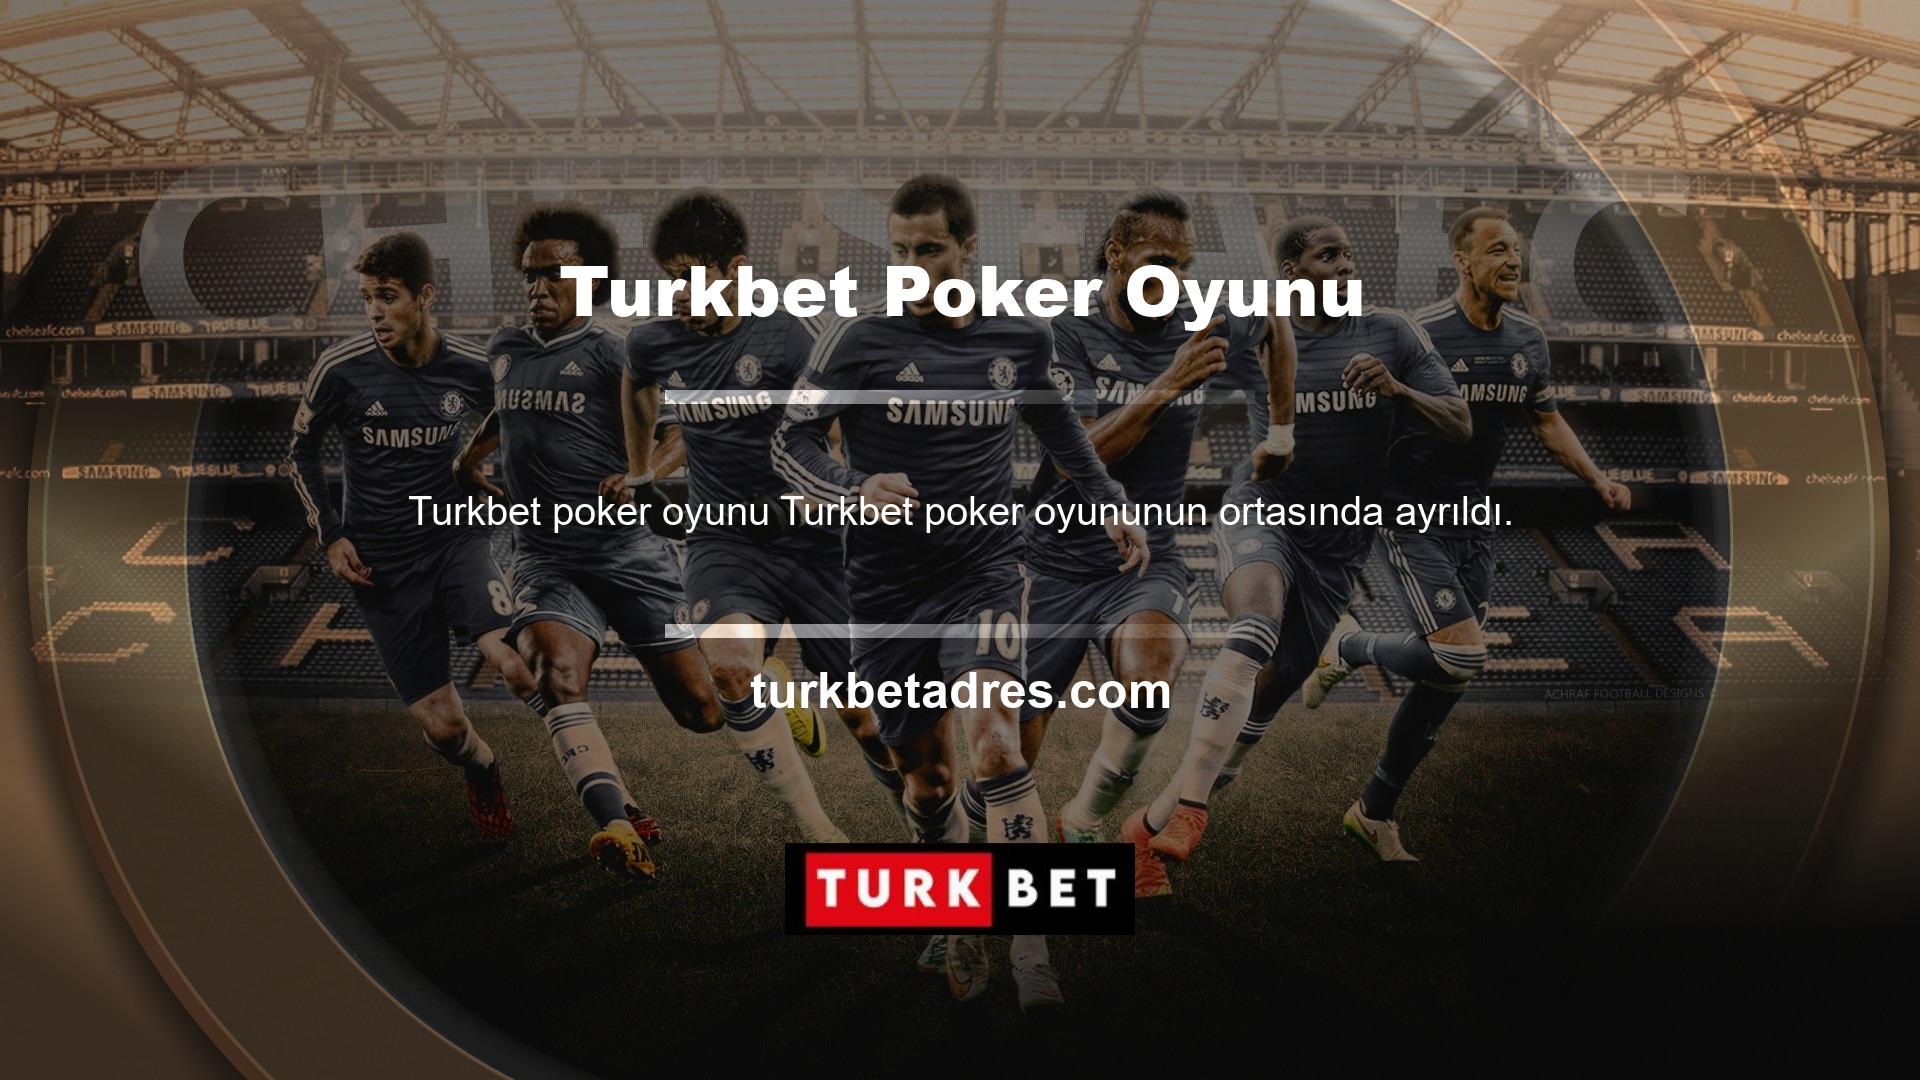 Turkbet, poker oyuncuları tarafından sevilen ve saygı duyulan tüm Türk casino oyunu bahis büroları arasındaki yerini koruyor